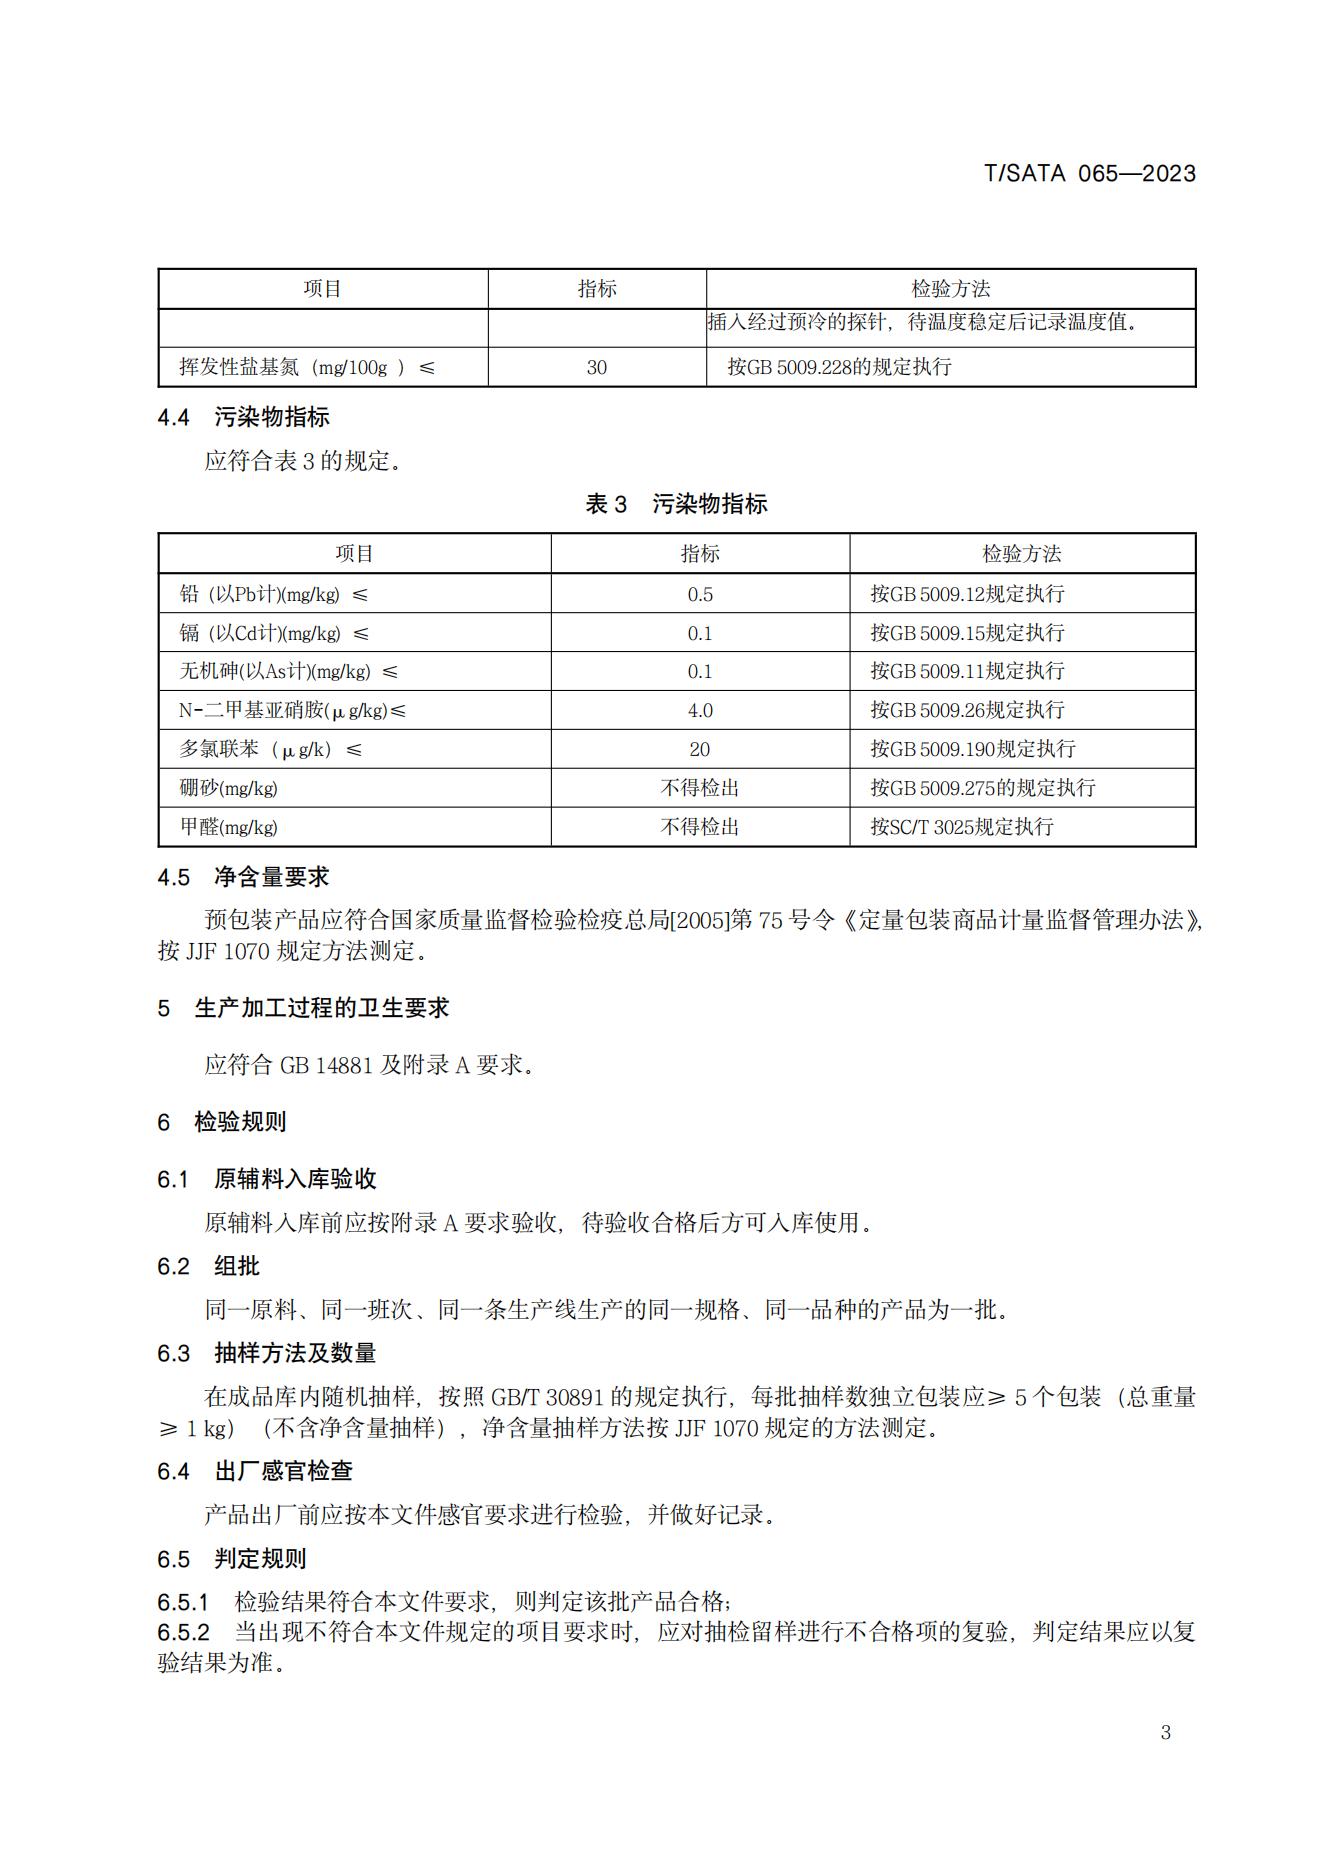 TSATA 065-2023 小作坊食品  冷冻鱼糜及制品_05.jpg